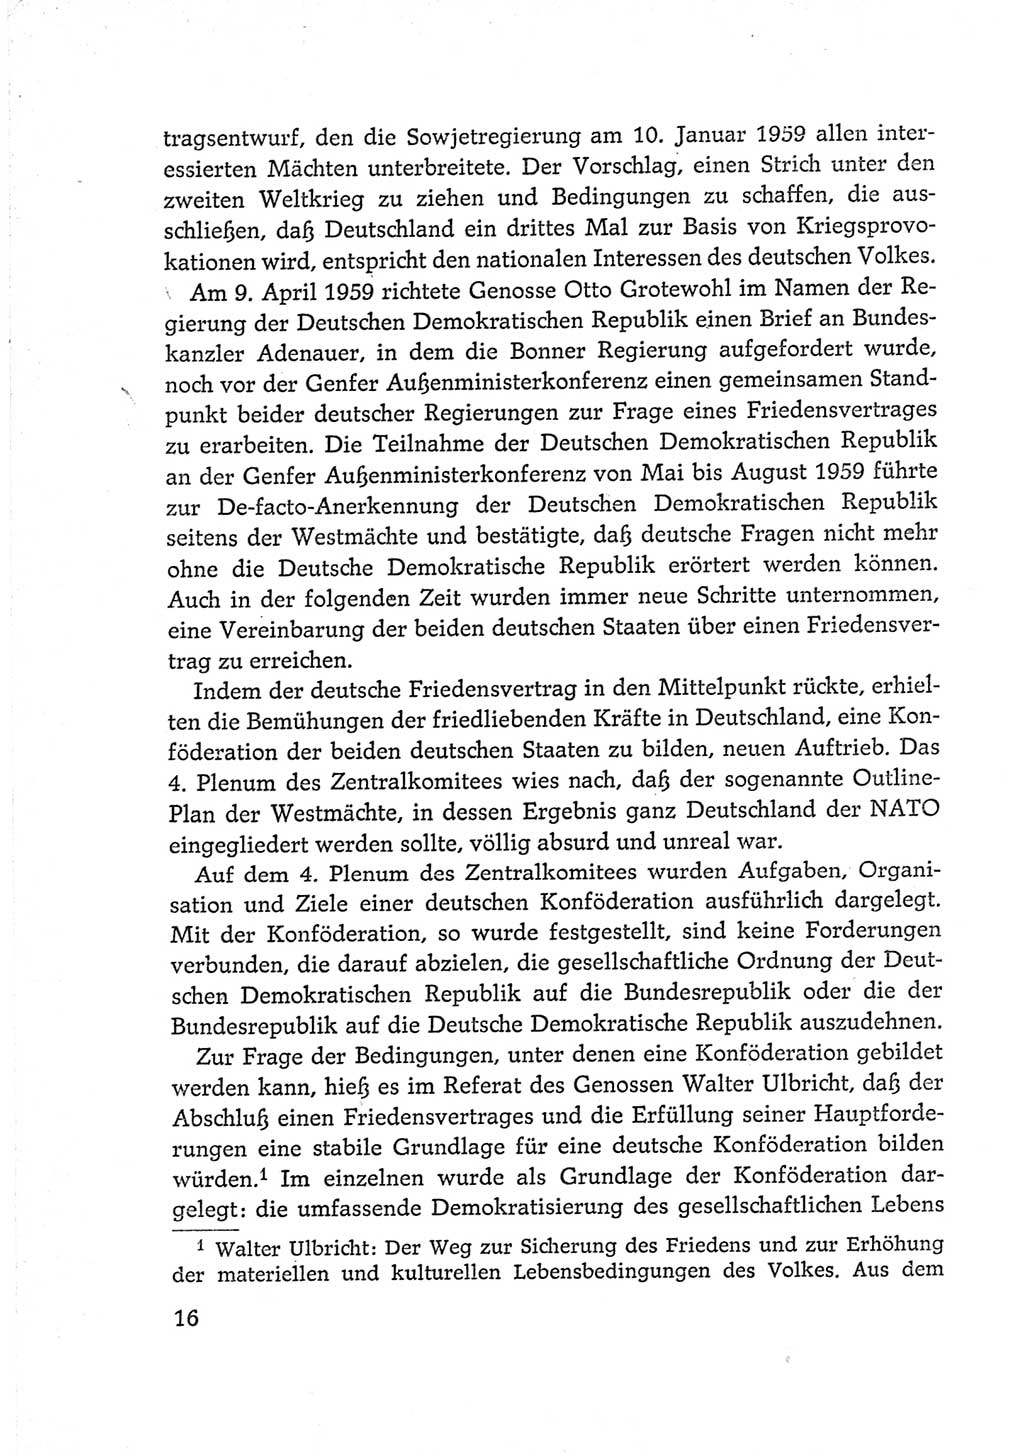 Protokoll der Verhandlungen des Ⅵ. Parteitages der Sozialistischen Einheitspartei Deutschlands (SED) [Deutsche Demokratische Republik (DDR)] 1963, Band Ⅳ, Seite 16 (Prot. Verh. Ⅵ. PT SED DDR 1963, Bd. Ⅳ, S. 16)